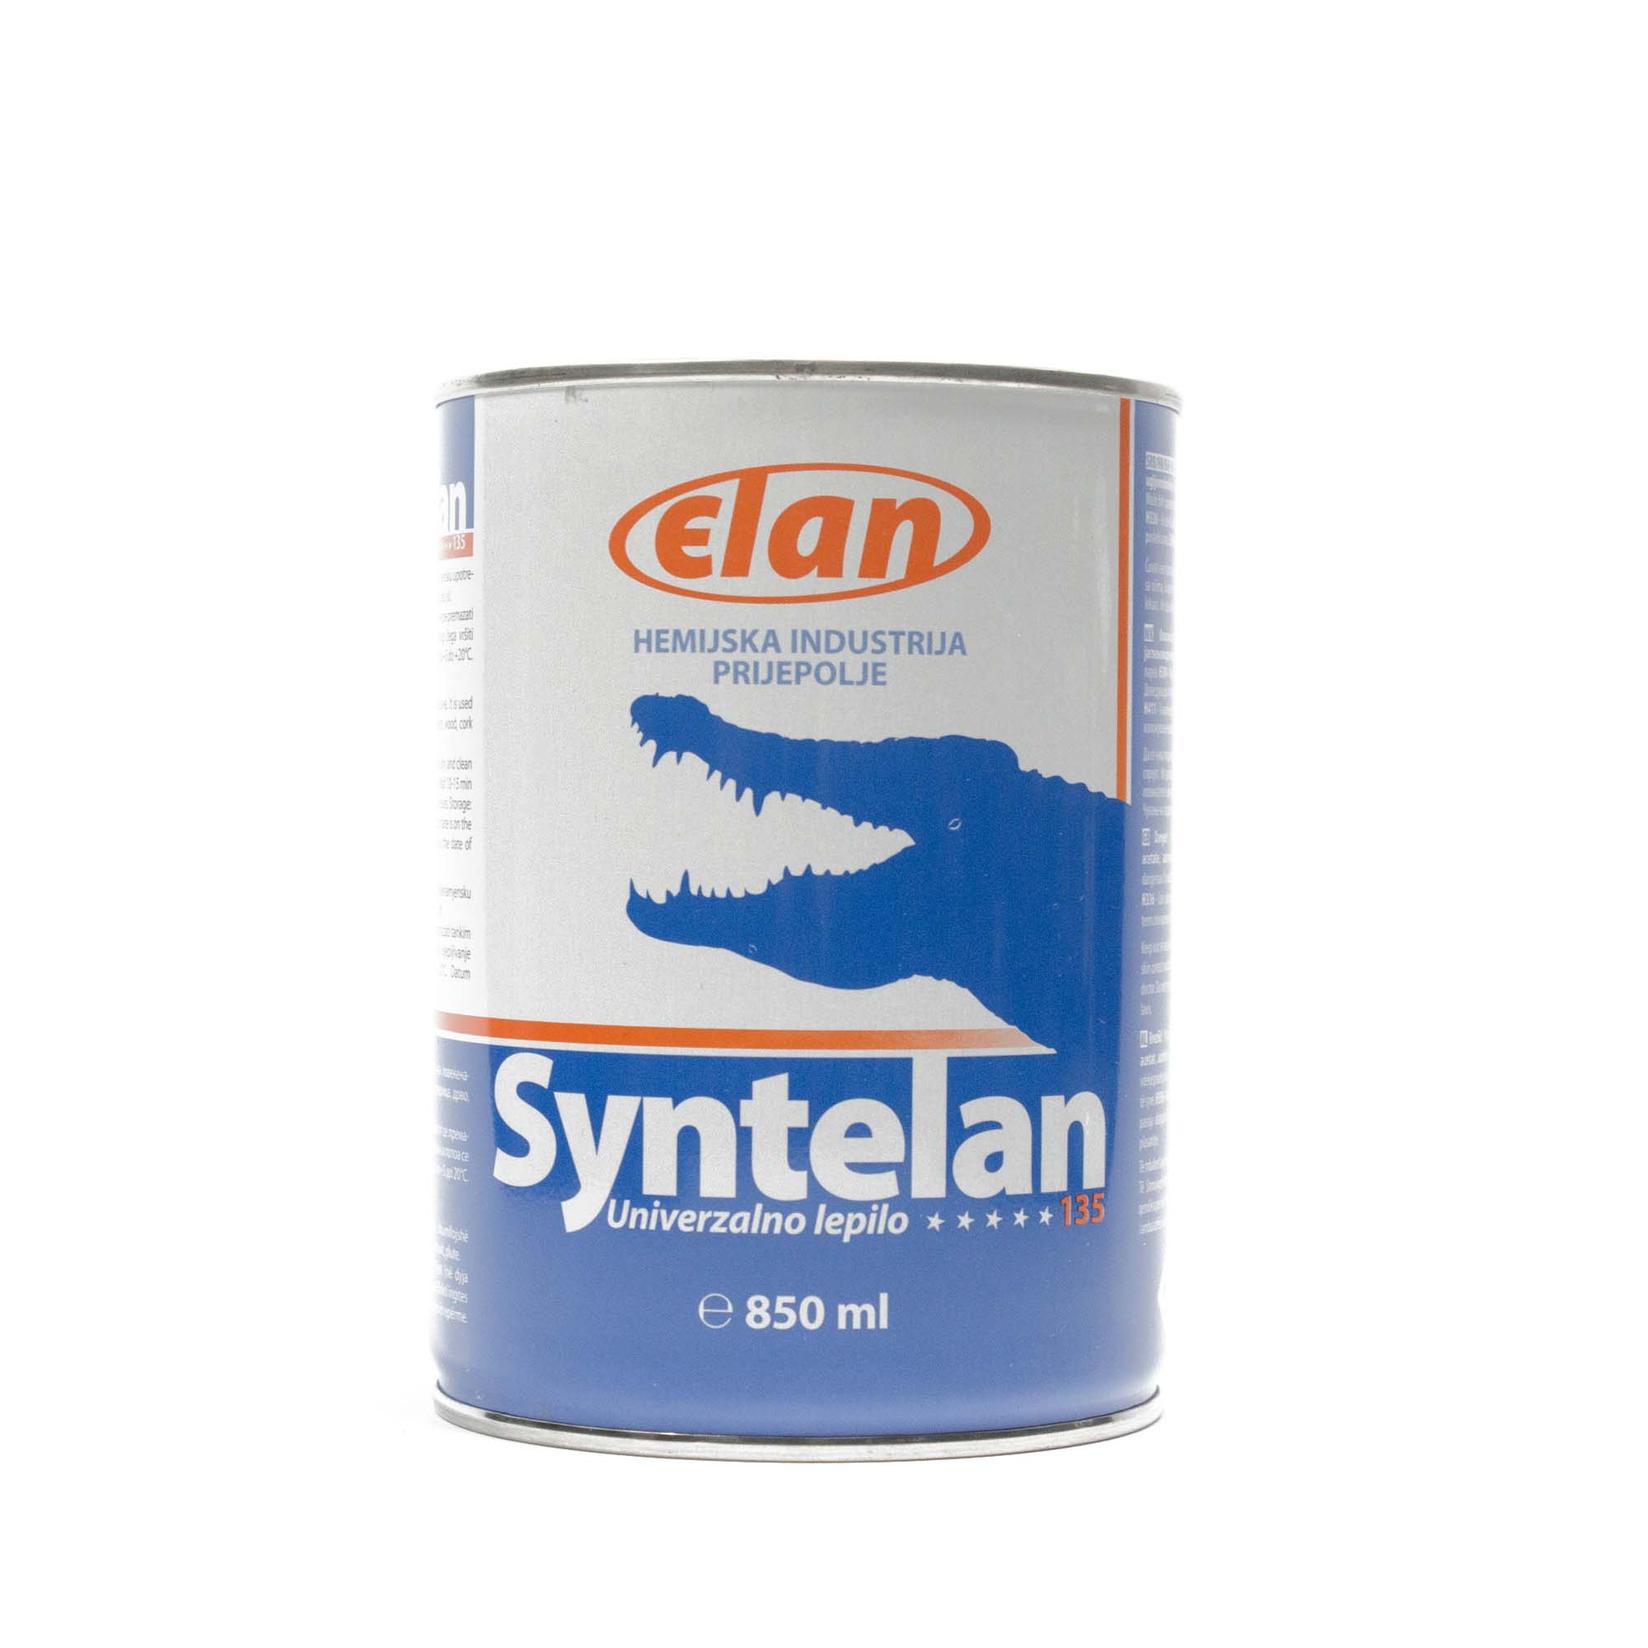 Selected image for ELAN Lepak Sintelan 850 ml